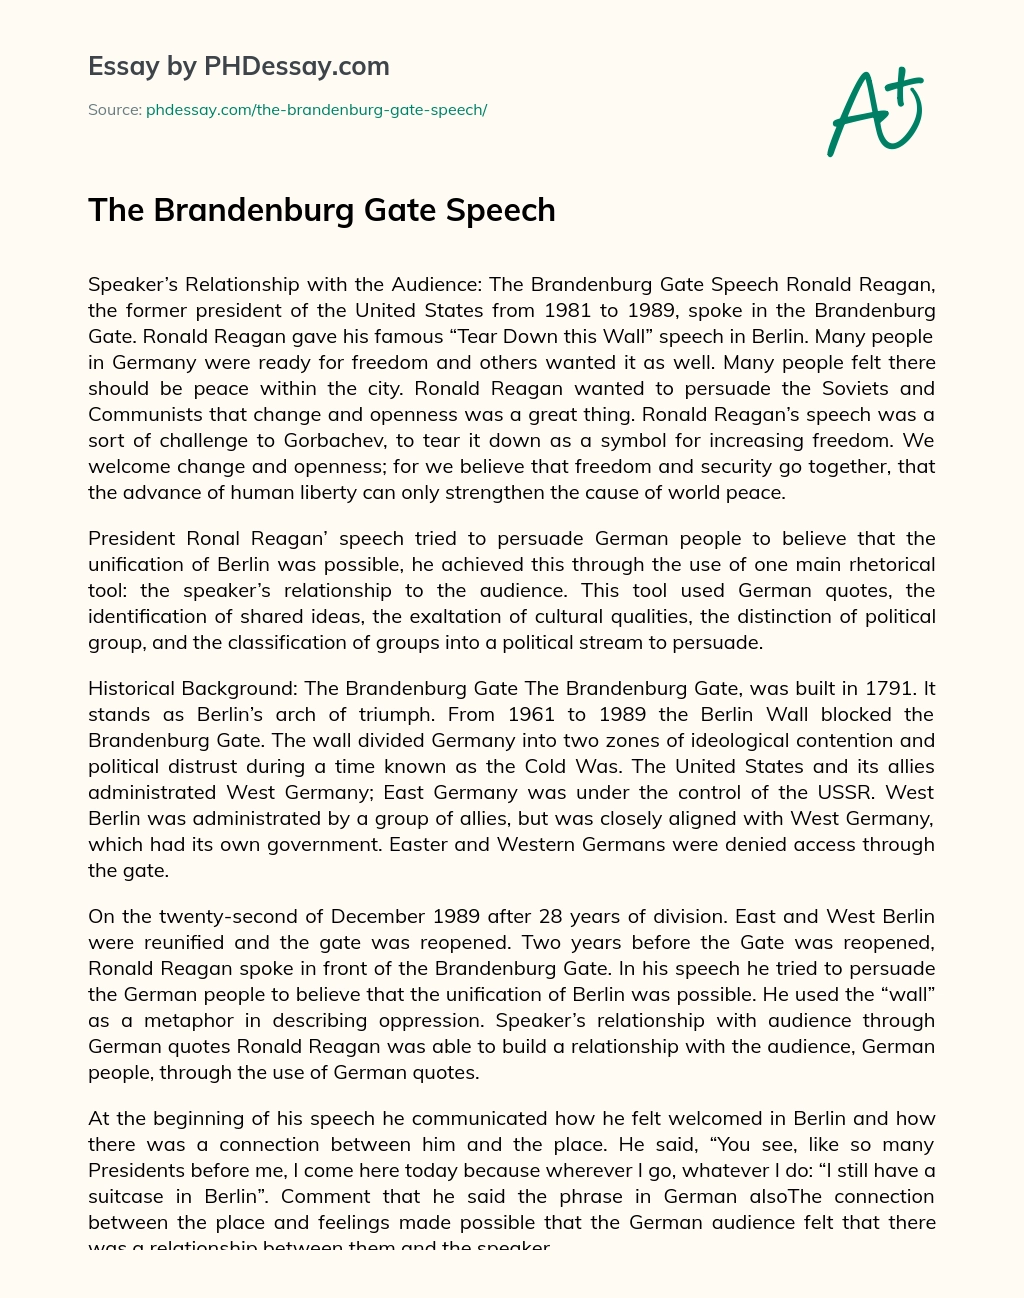 The Brandenburg Gate Speech essay